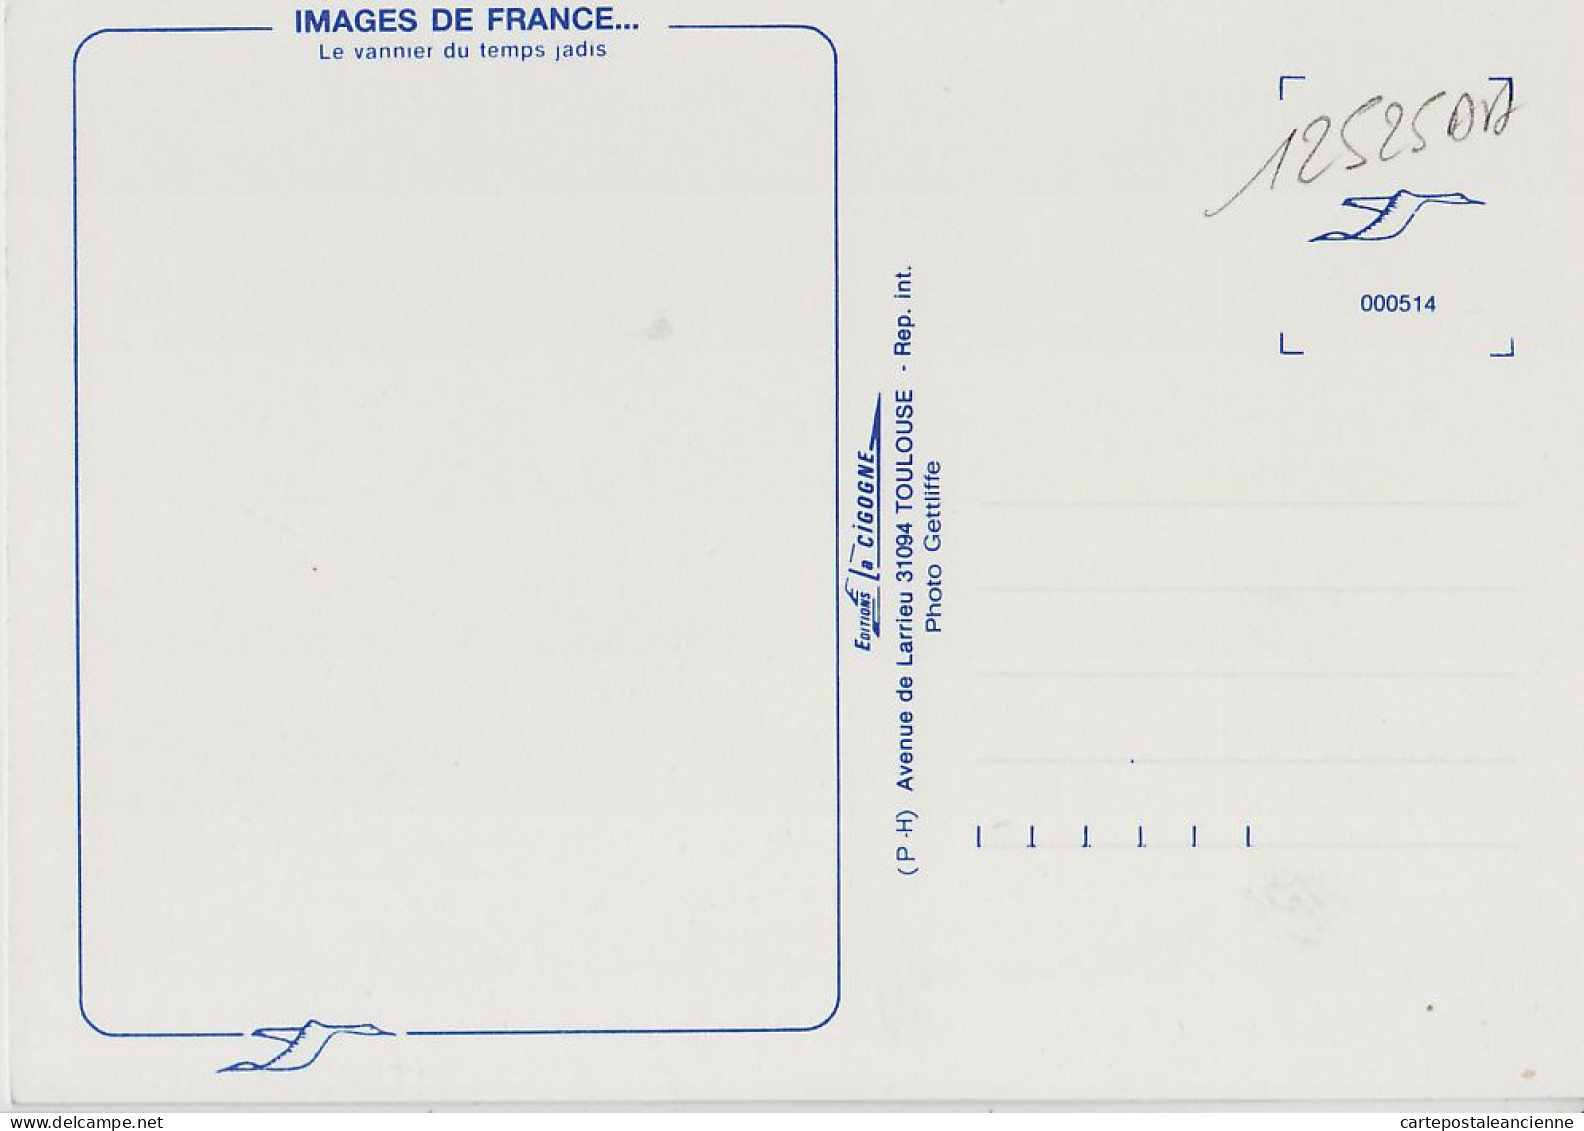 05451 / Midi-Pyrénées Le VANNIER Du Temps Jadis Artisanat Metier 1980s- IRIS CIGOGNE Toulouse Cpagr - Landbouwers